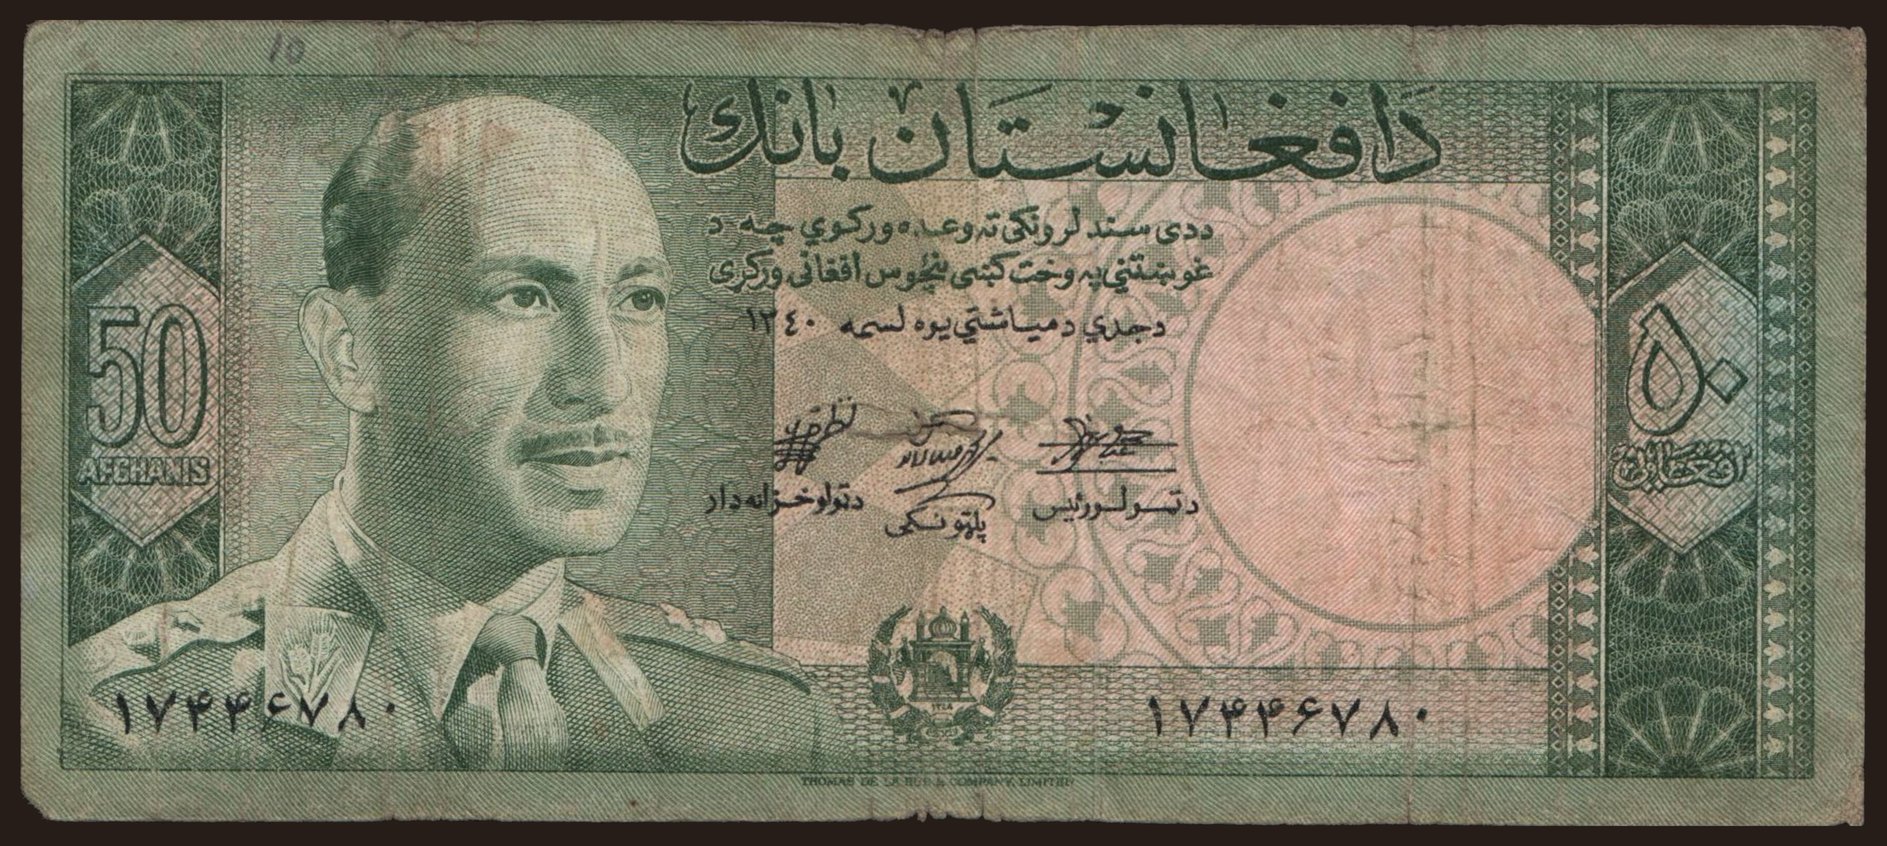 50 afghanis, 1961